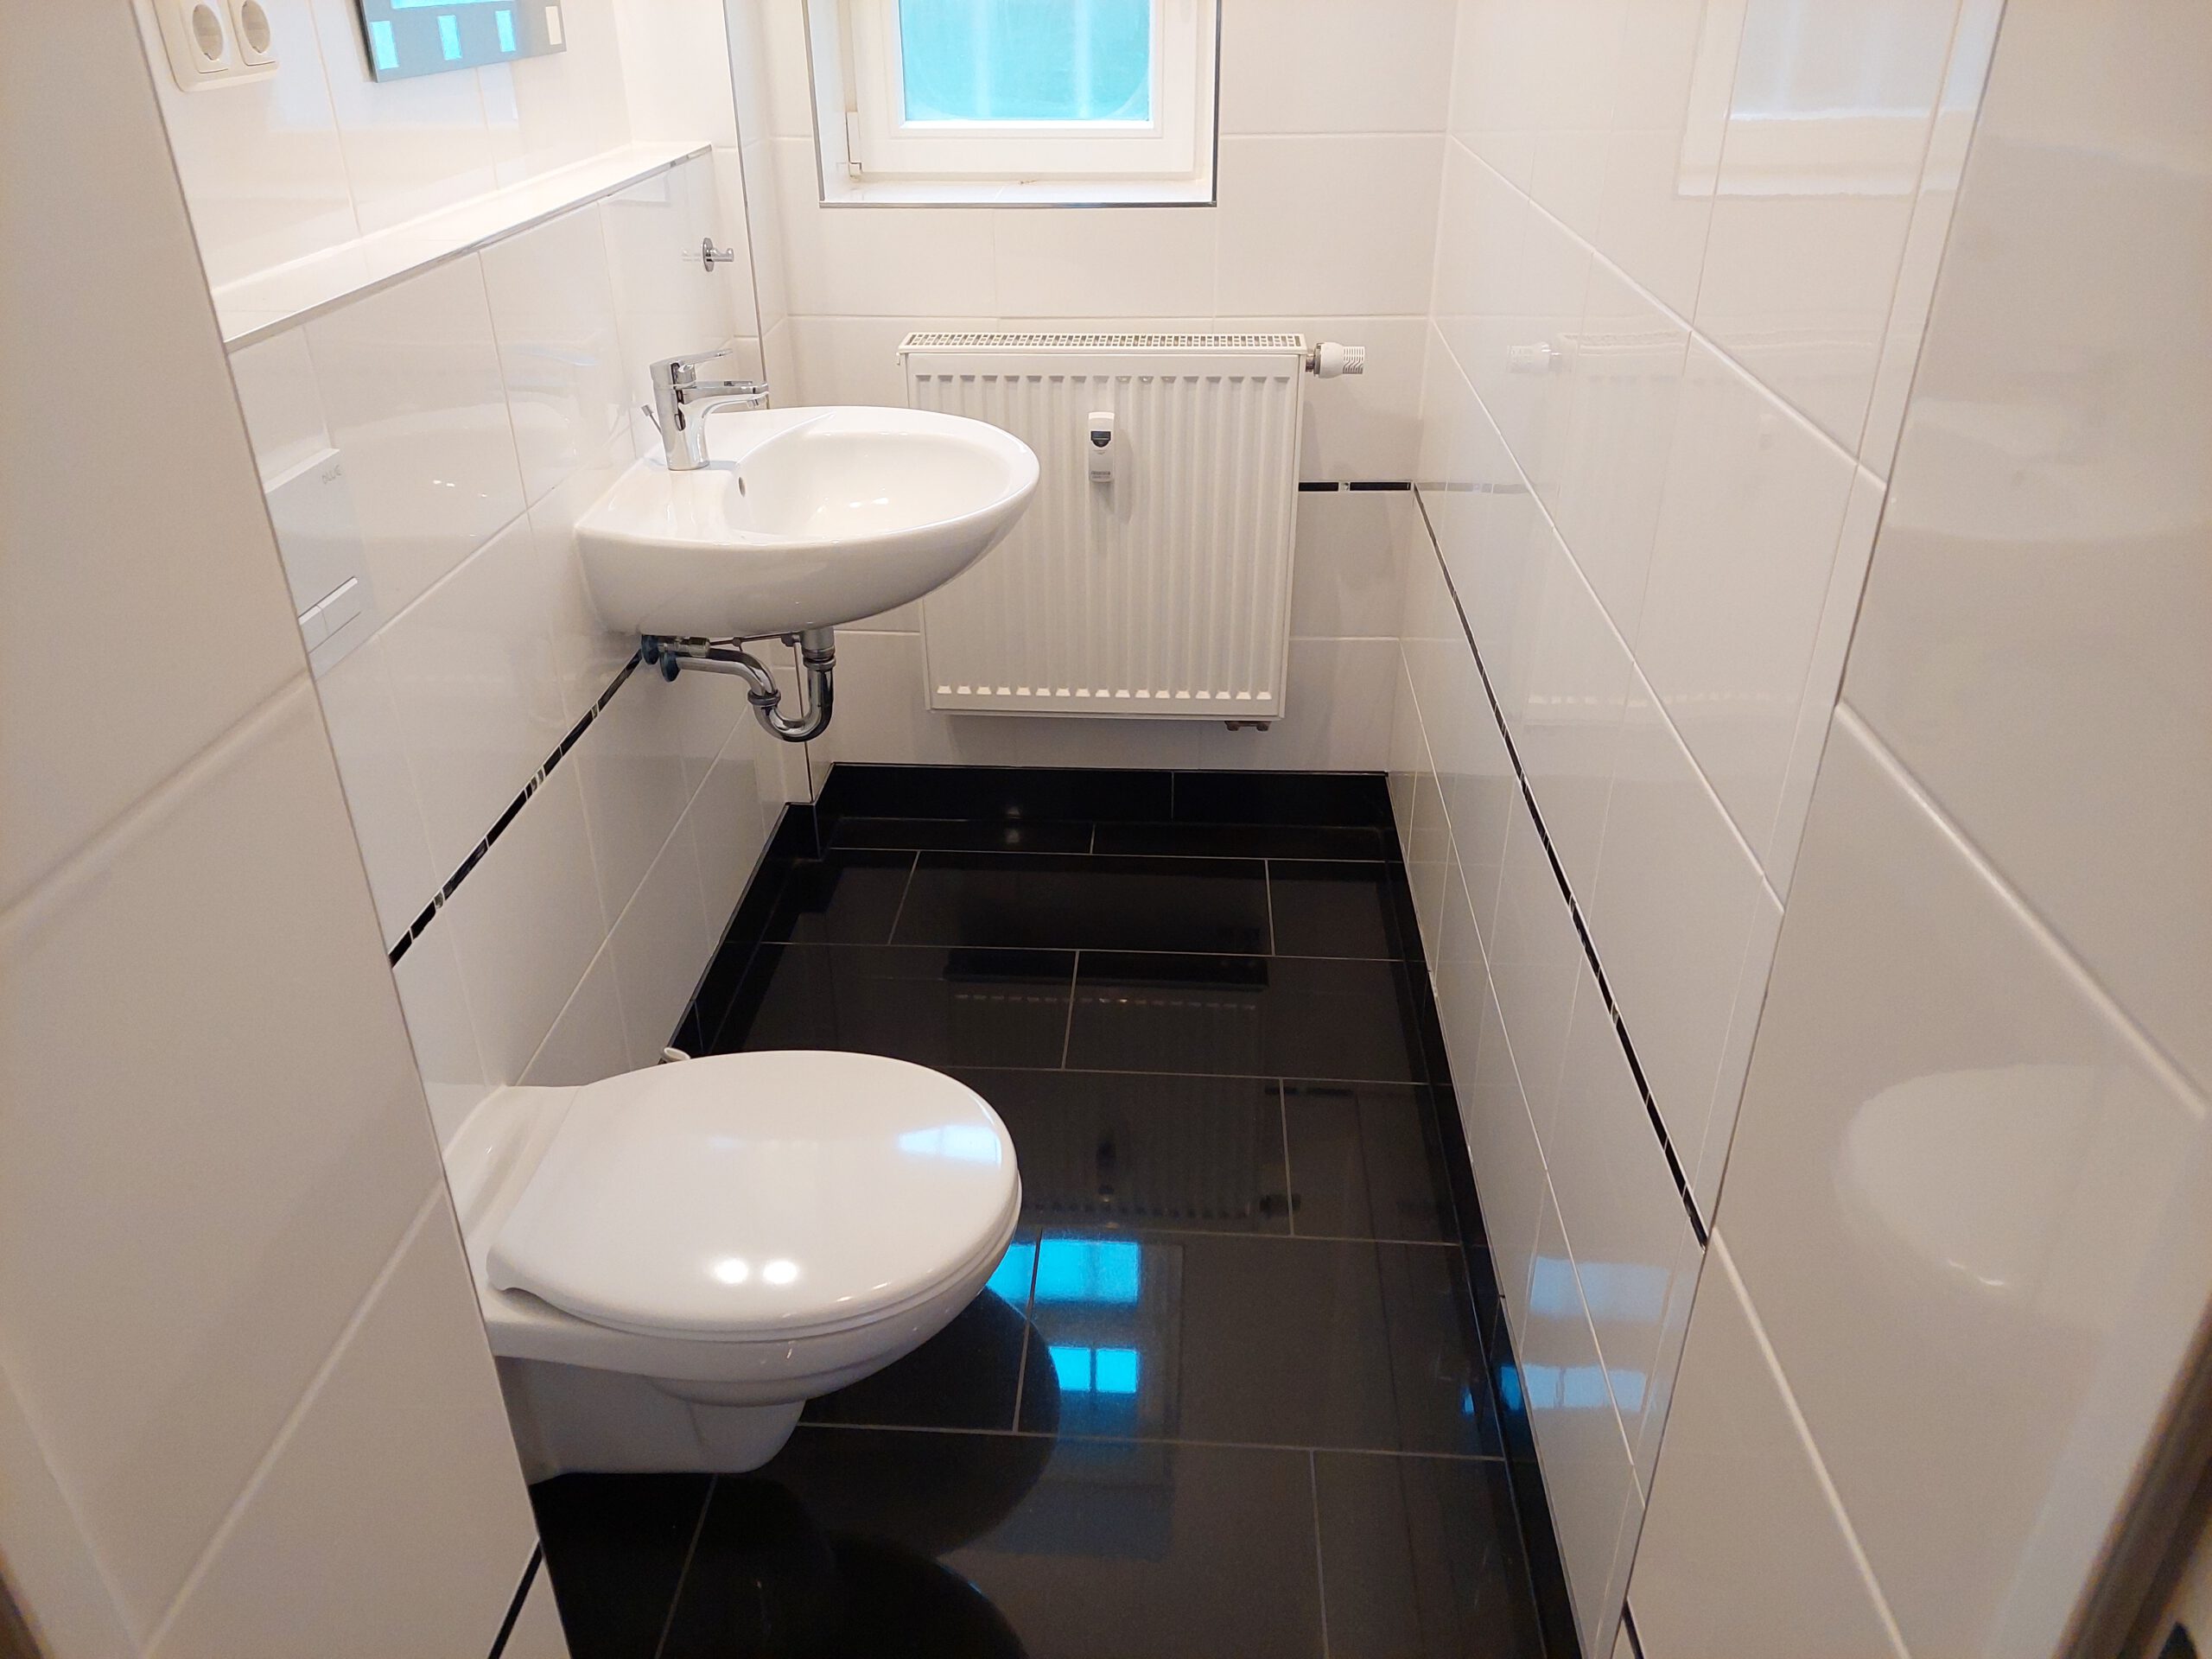 Mietwohnung in Bad Lauchstädt - Gäste-WC